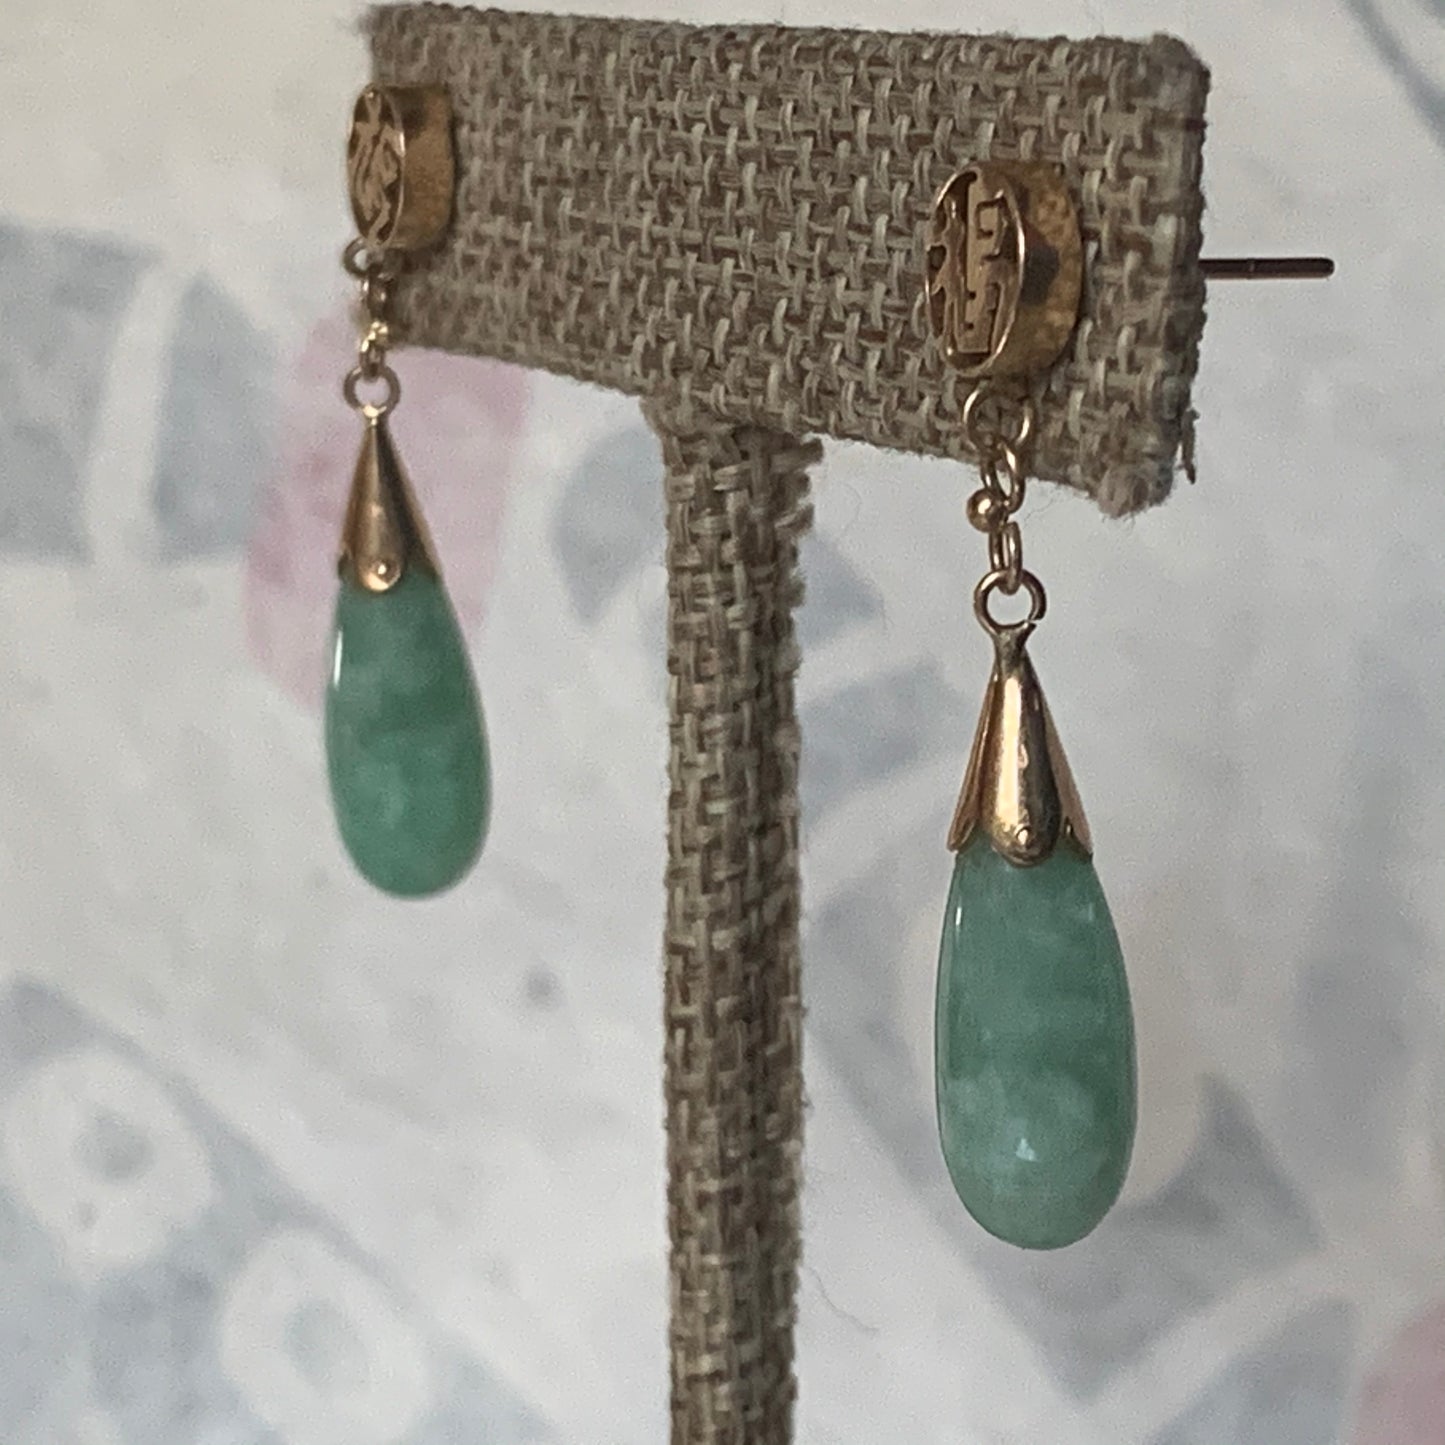 A jade earring